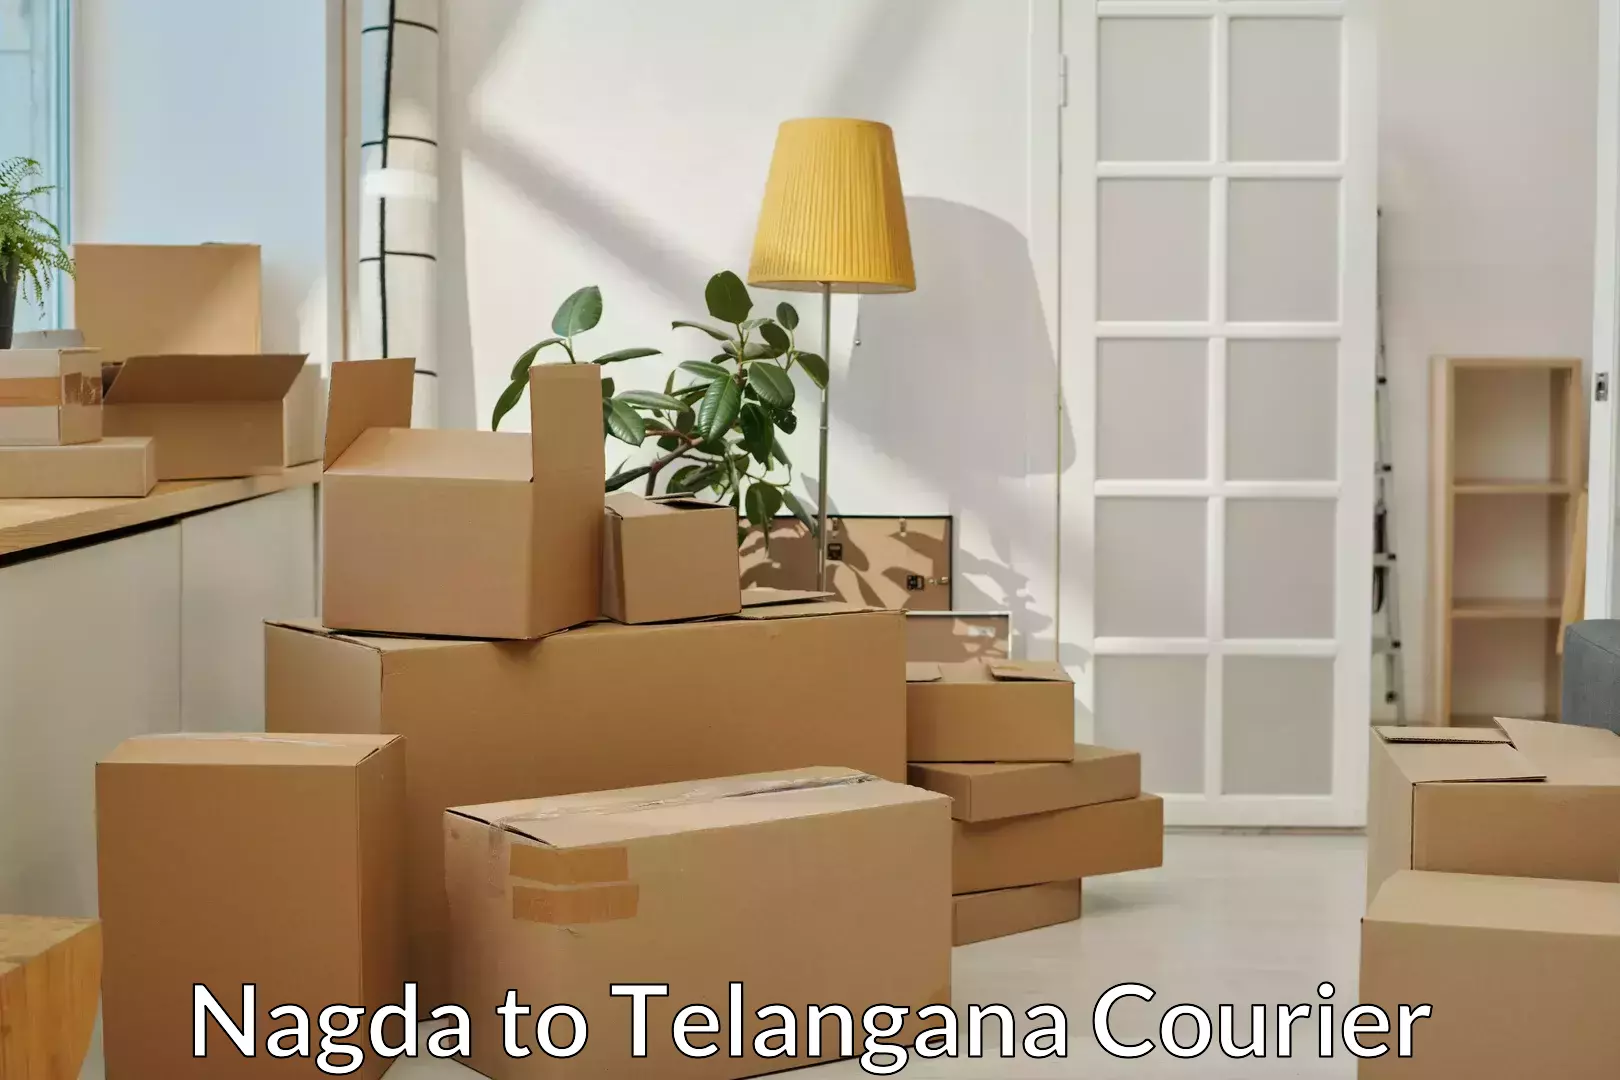 Furniture transport and logistics in Nagda to Kothagudem